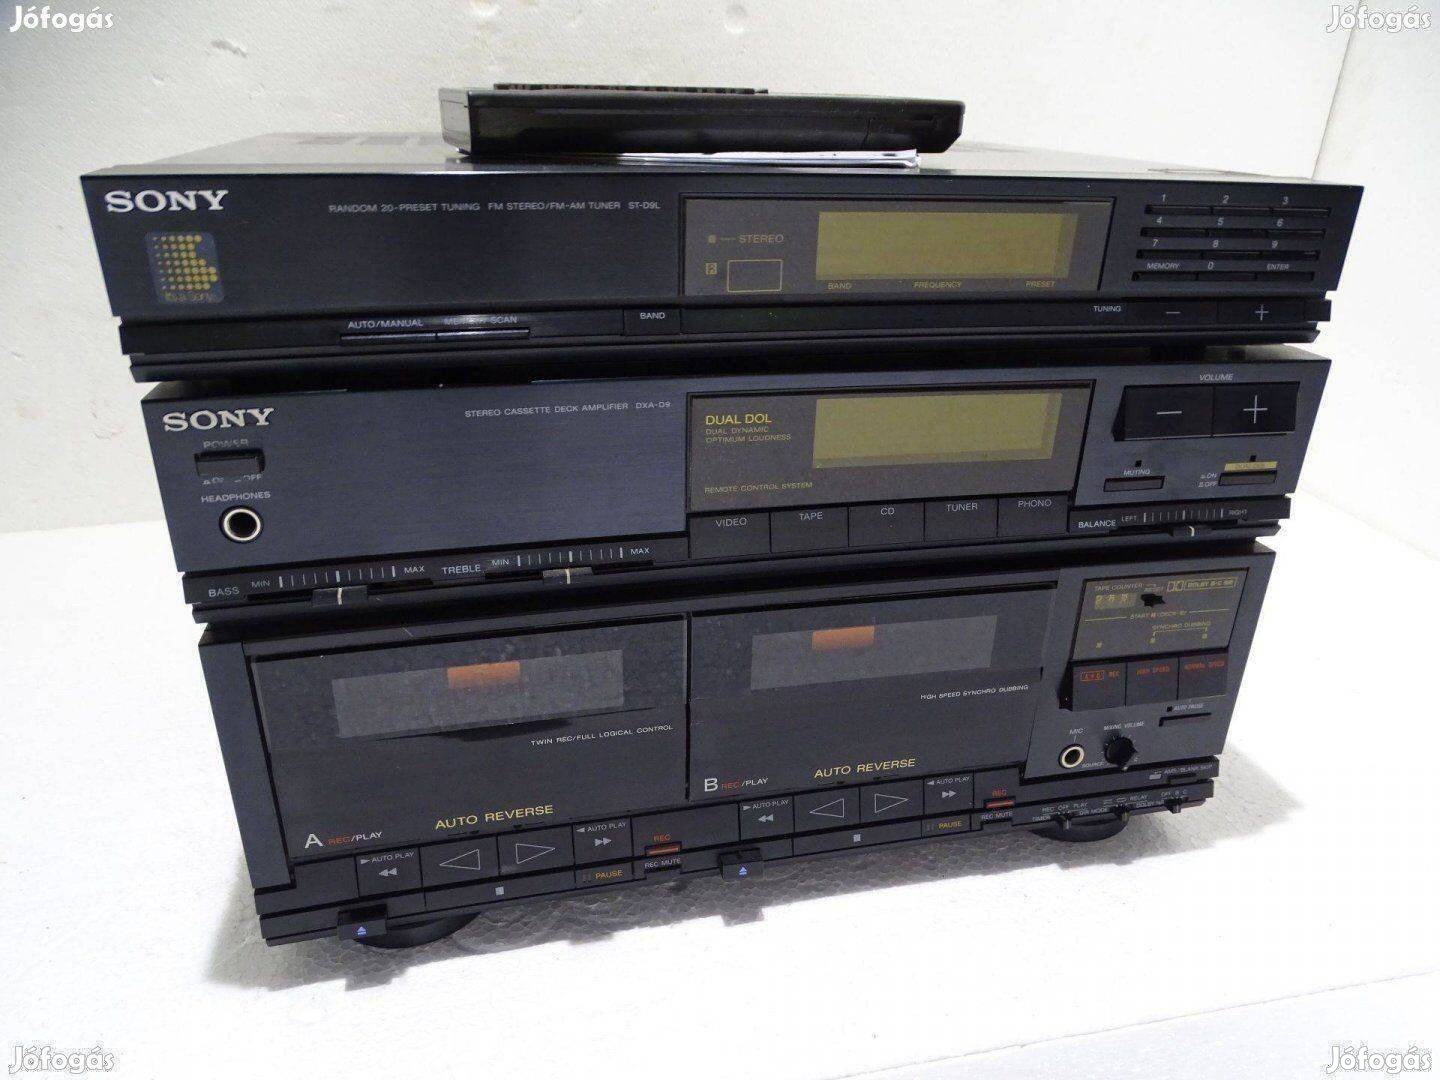 Sony DCA-D9 kazetta deck erősítő kazetta deck lejátszó rádió Tuner